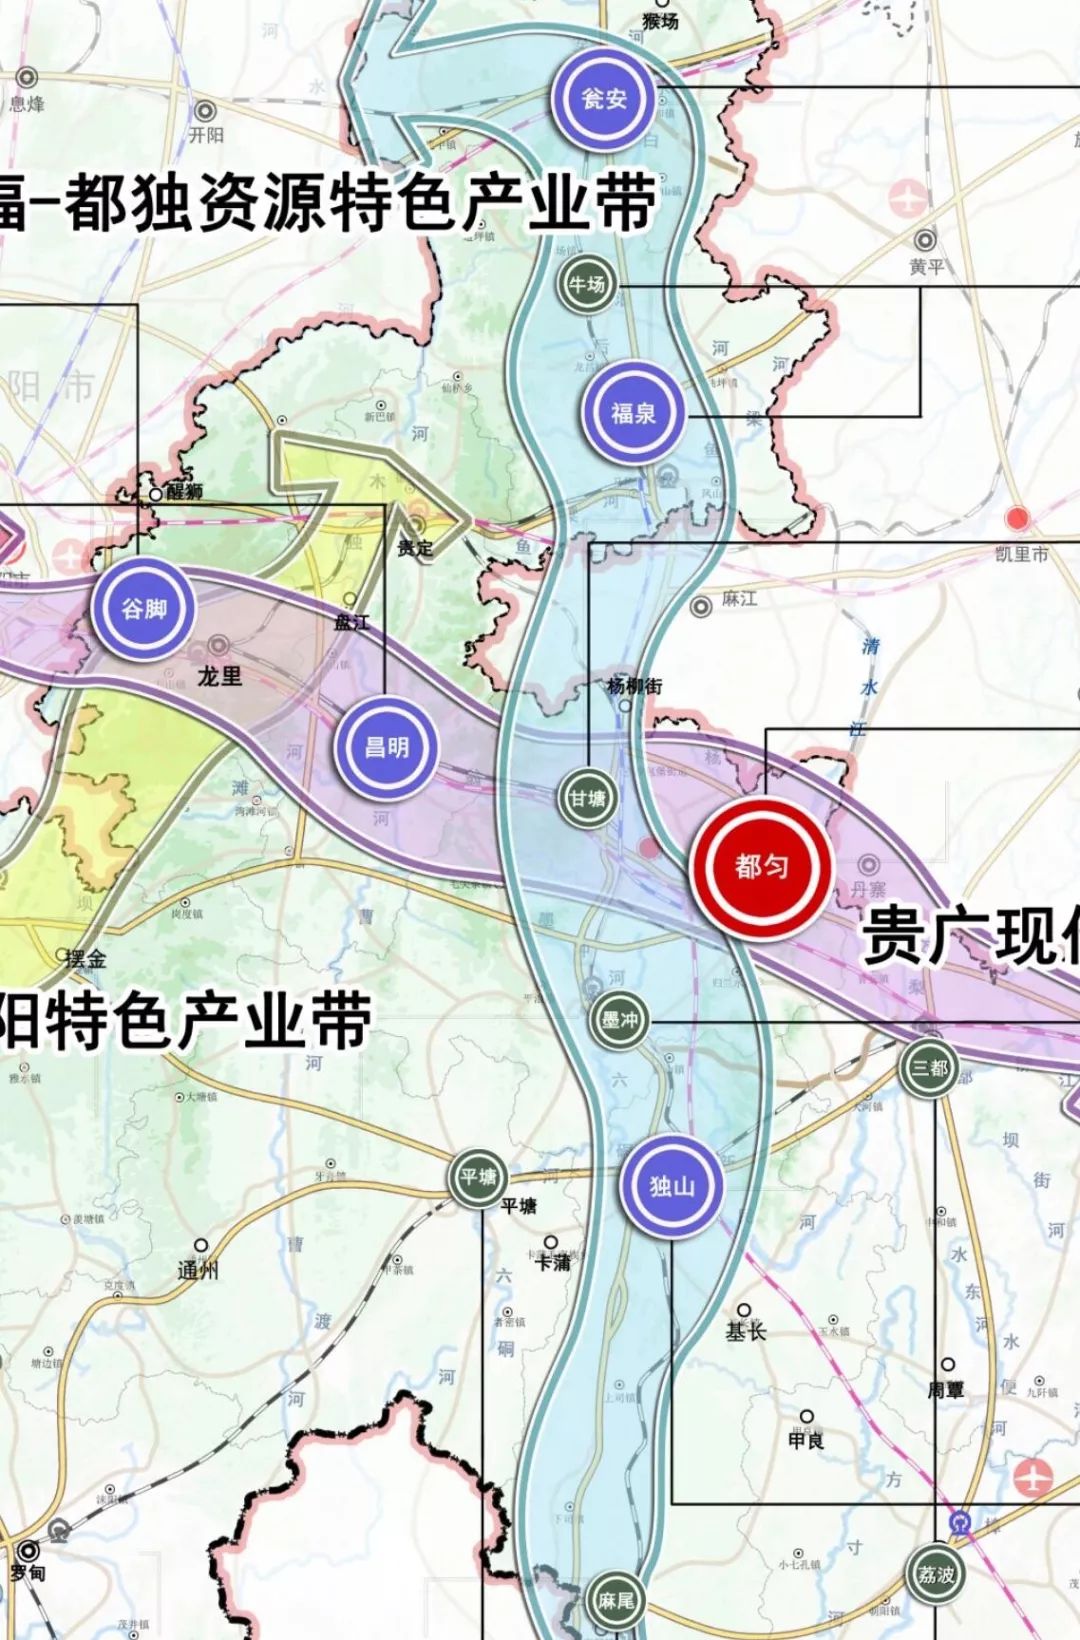 黔南工业布局规划图公布共有3个特色产业带4个工业园区等